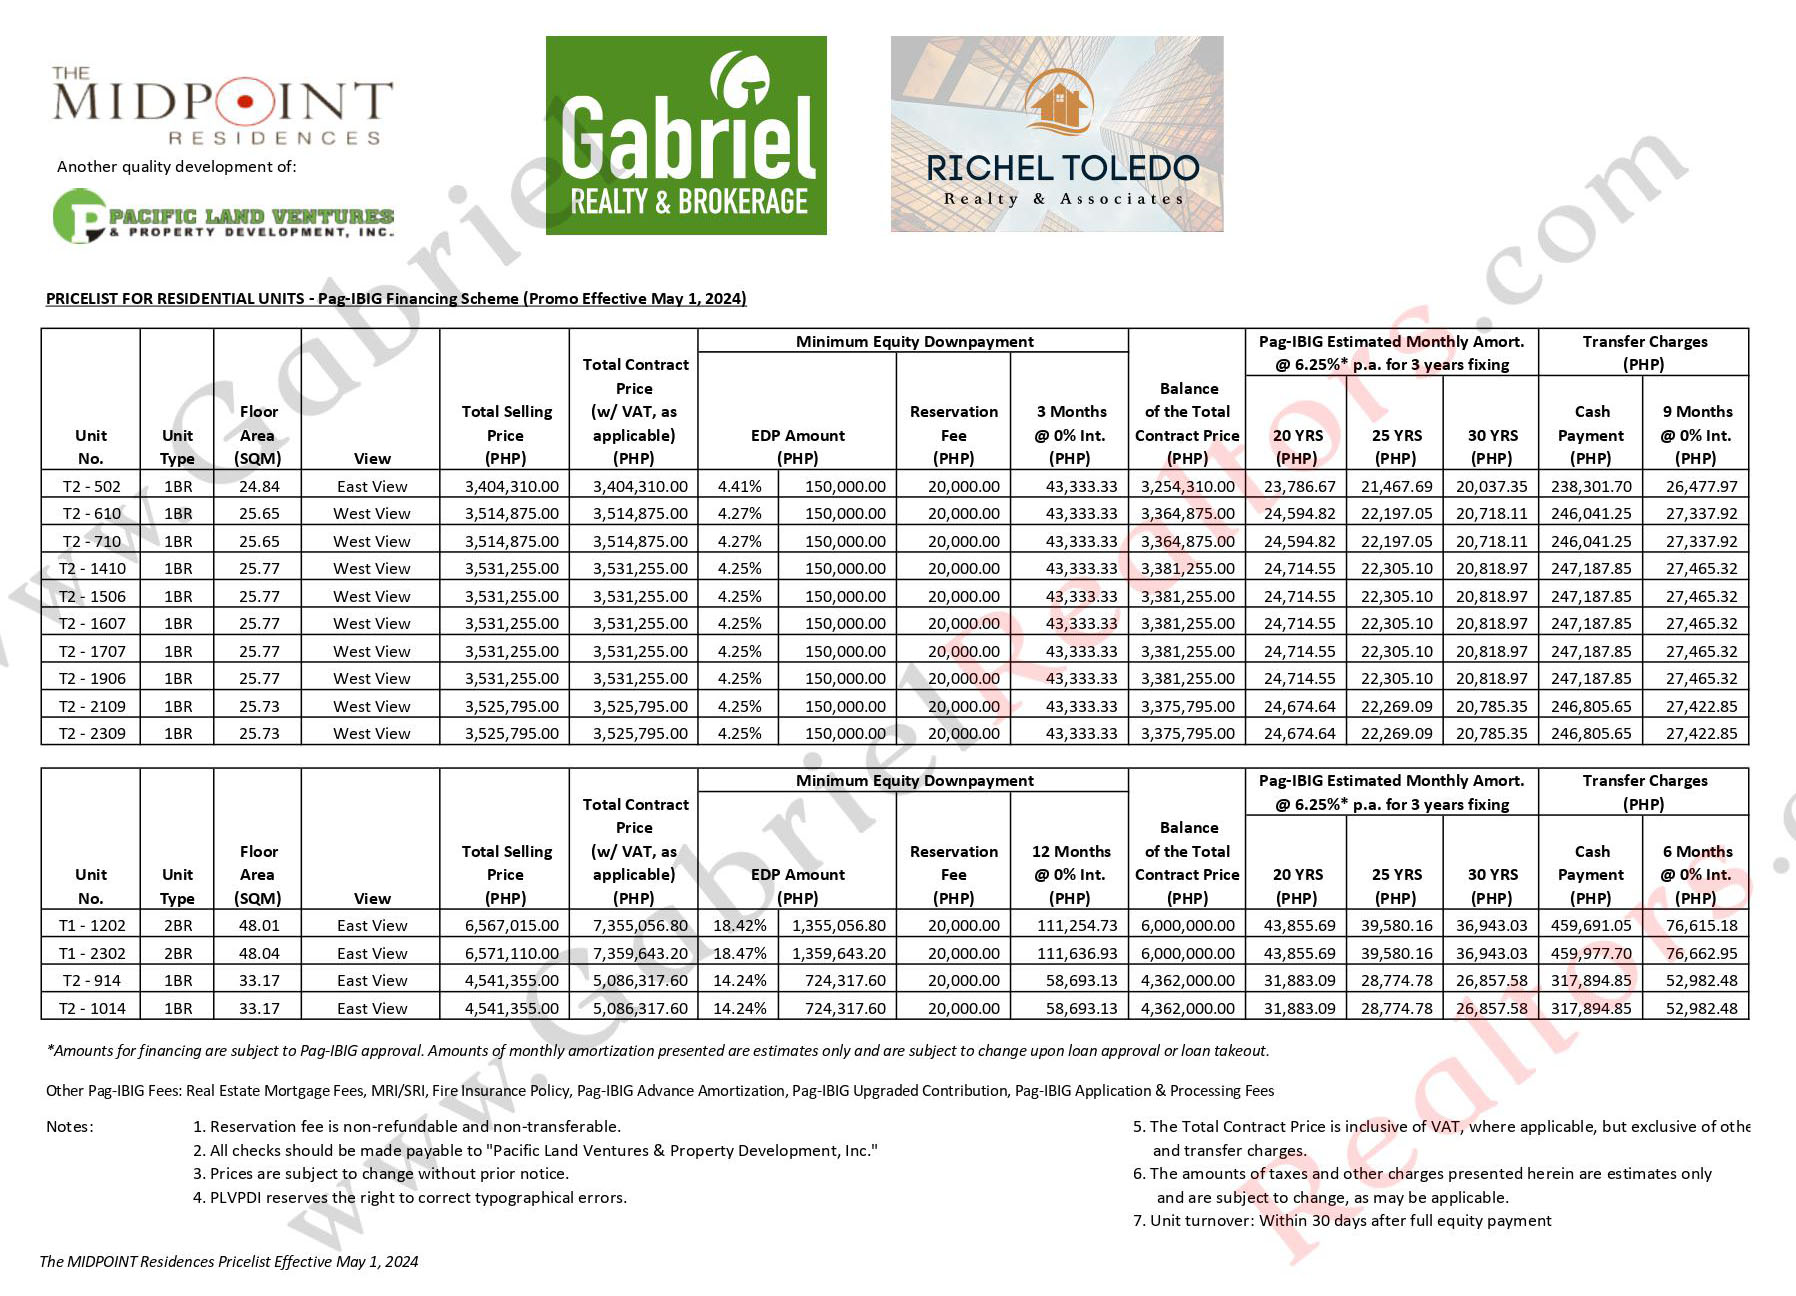 MIDPOINT RESIDENCES Latest Pricelist (PAG-IBIG)